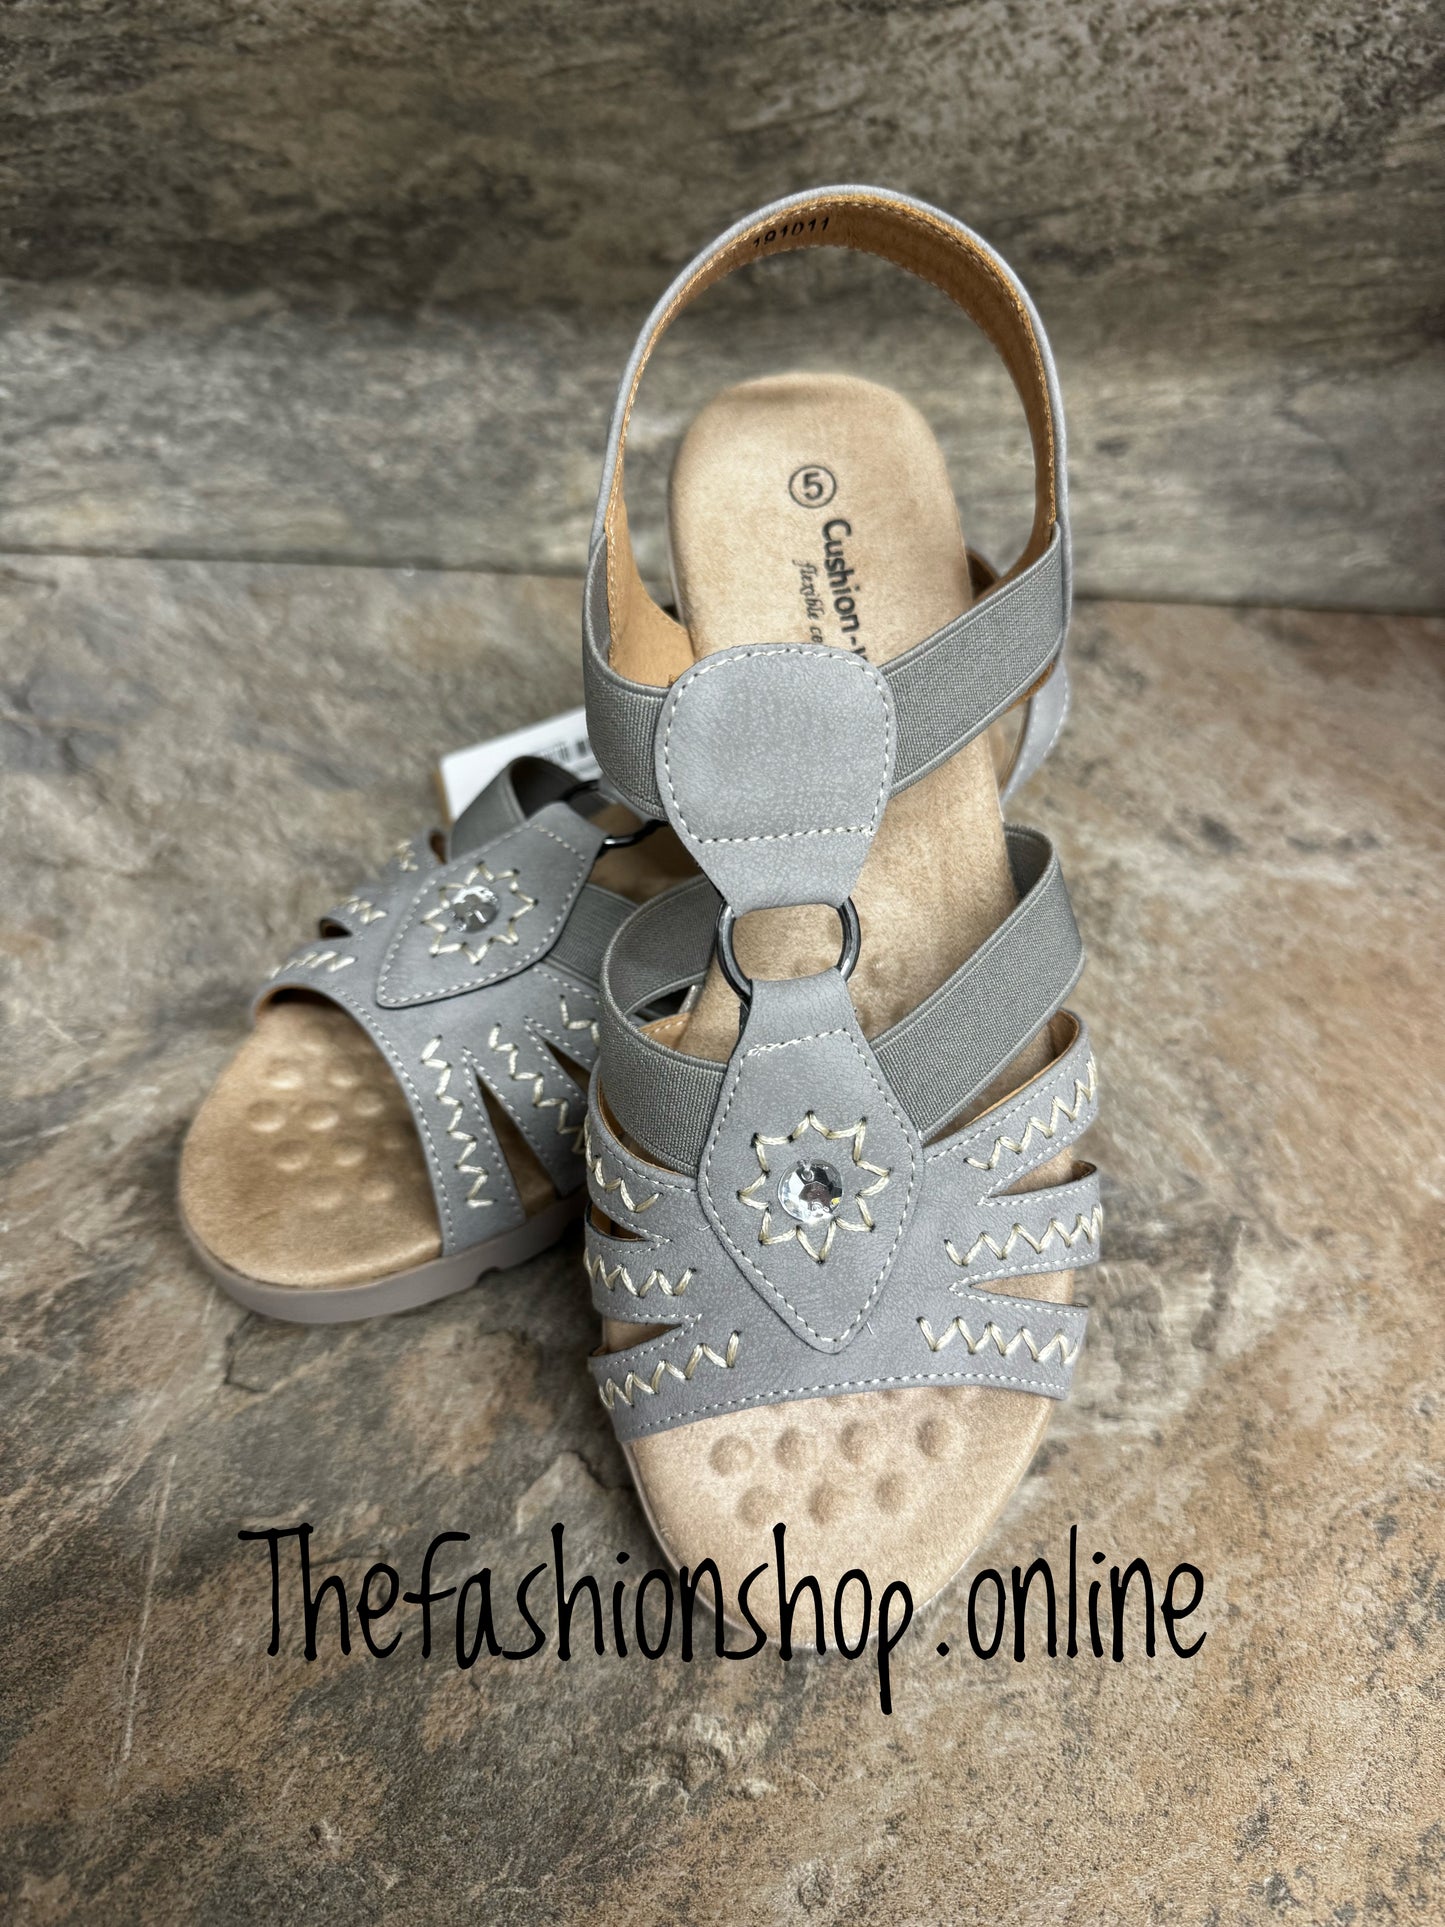 Cushion-walk Lottie grey wide fit sandal sizes 4-8